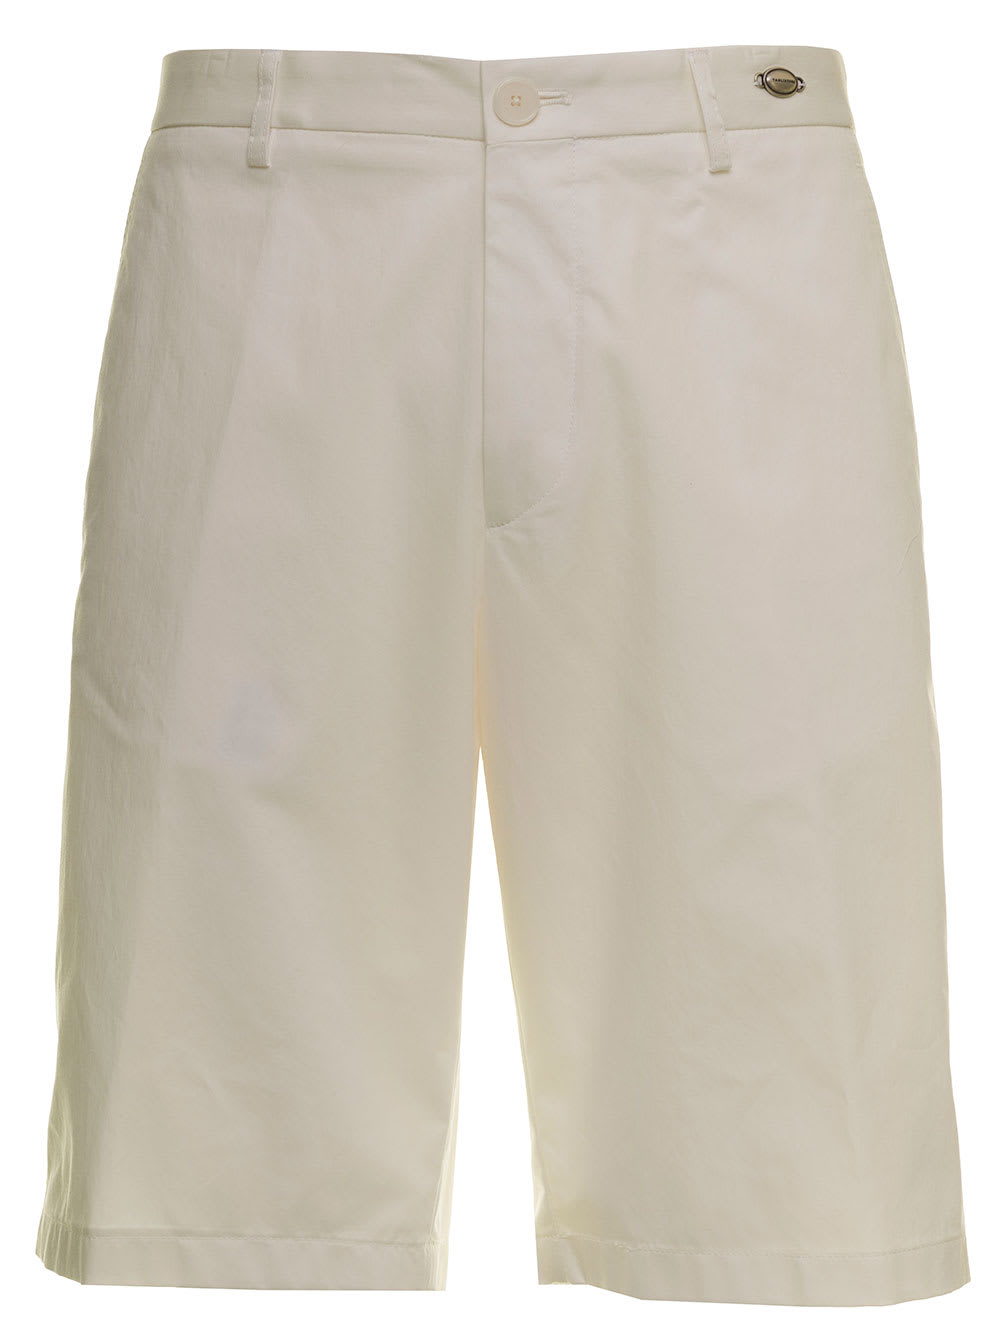 Tagliatore Mens White Cotton Bermuda Shorts